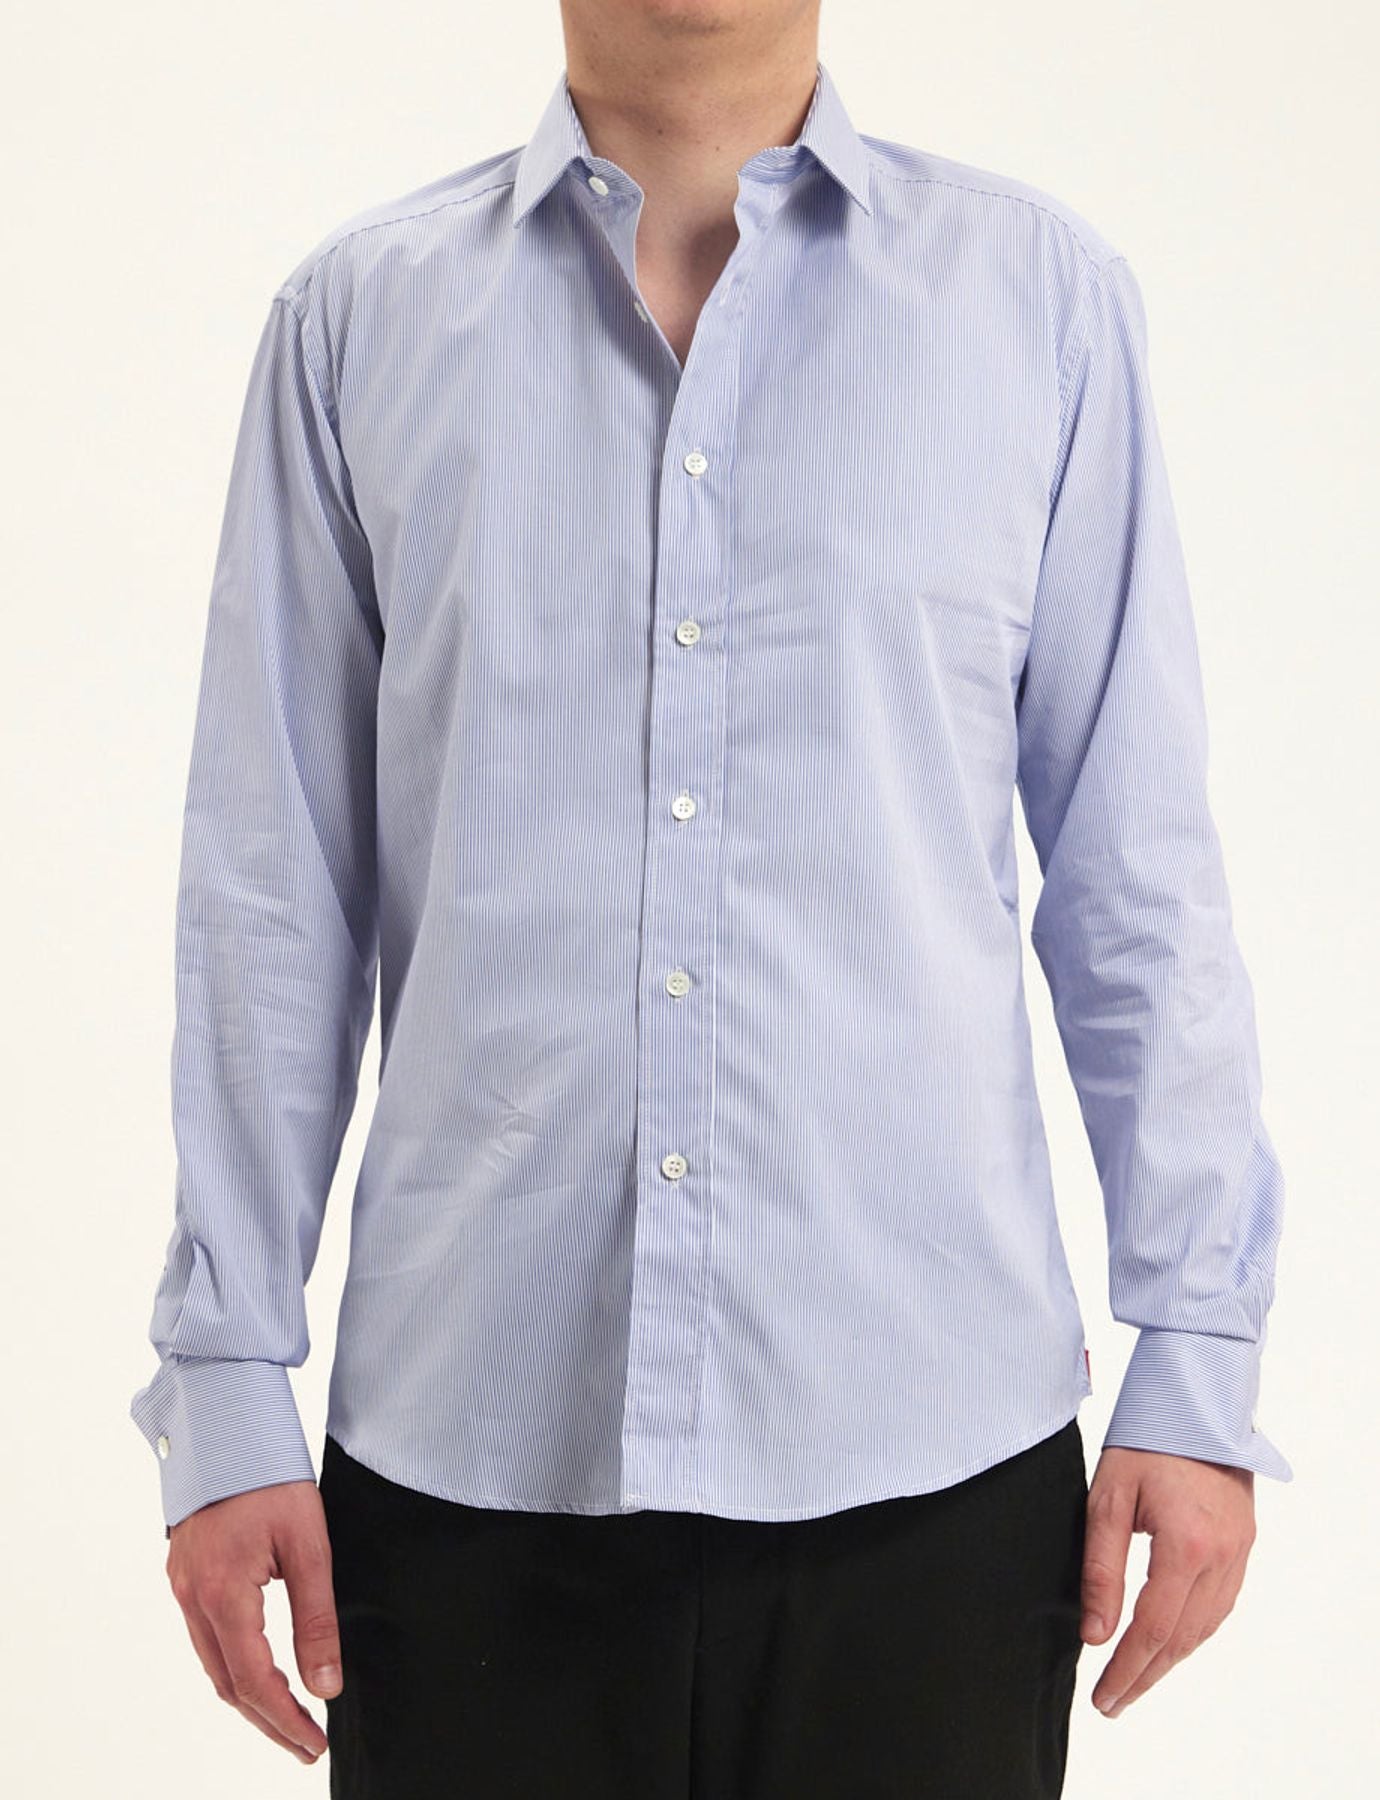 shirt-for-men-olivier-blue-white-stripes